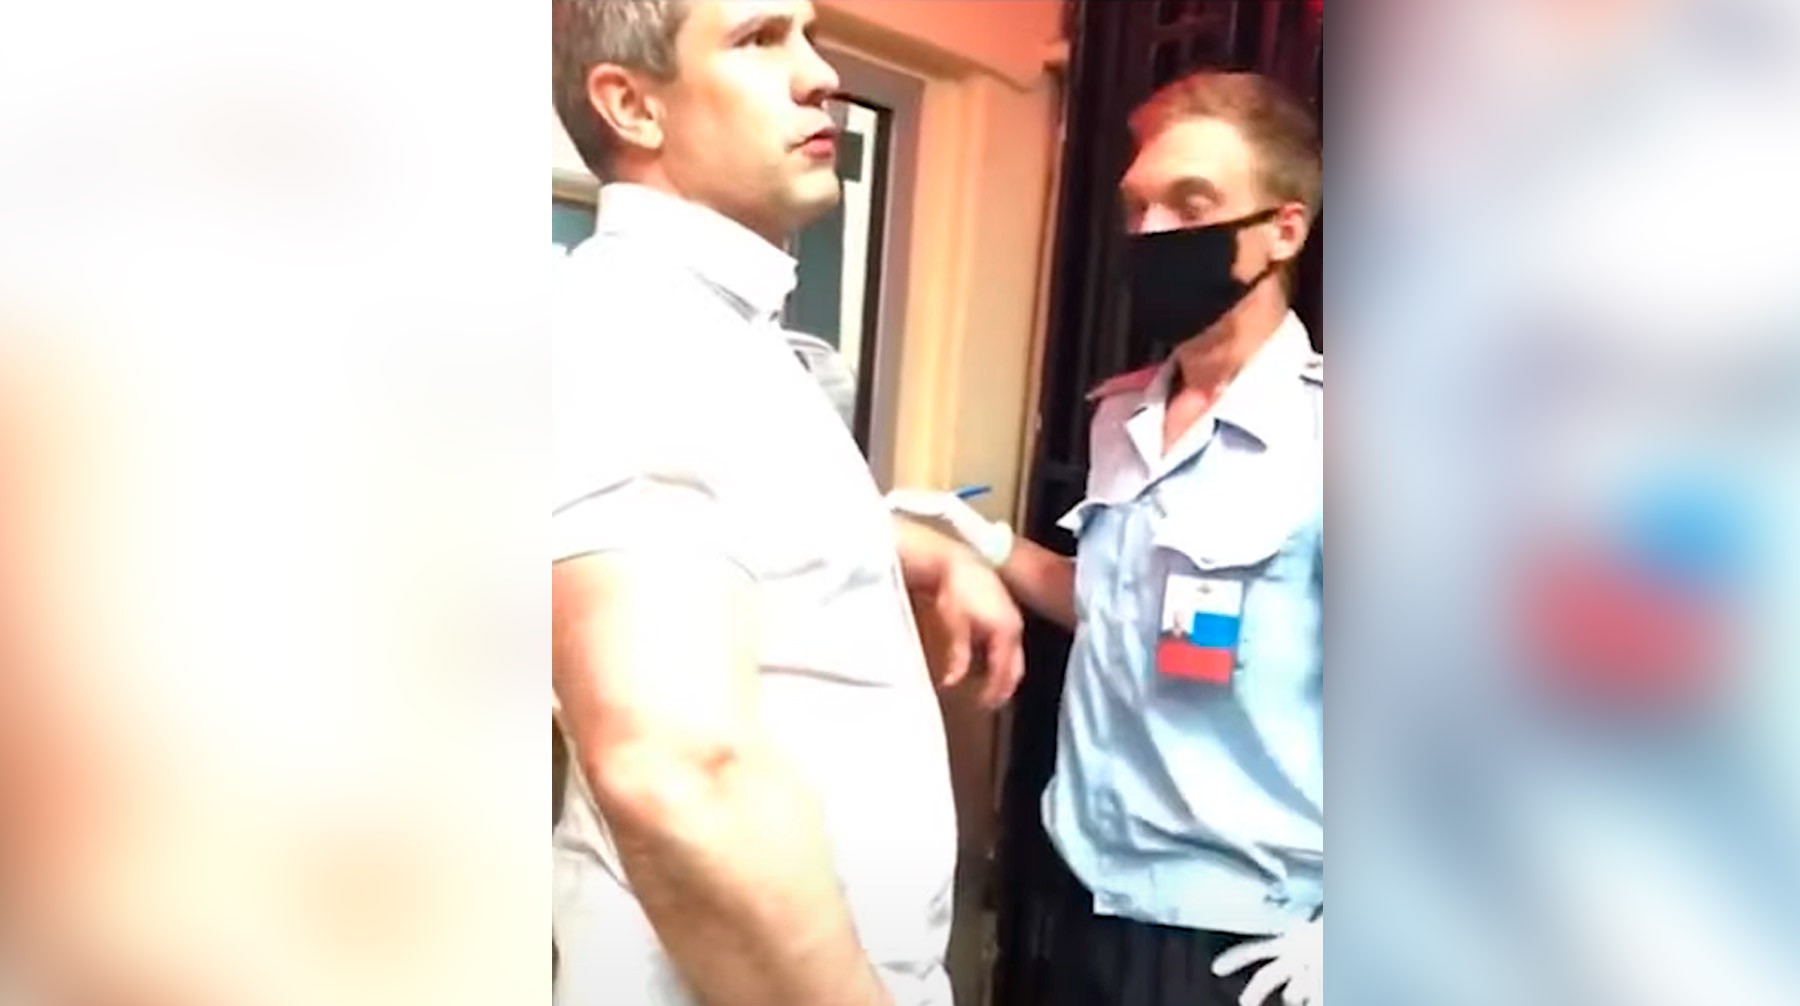 Dailystorm - СМИ: Пьяный сотрудник Генпрокуратуры набросился с кулаками на полицейских — видео